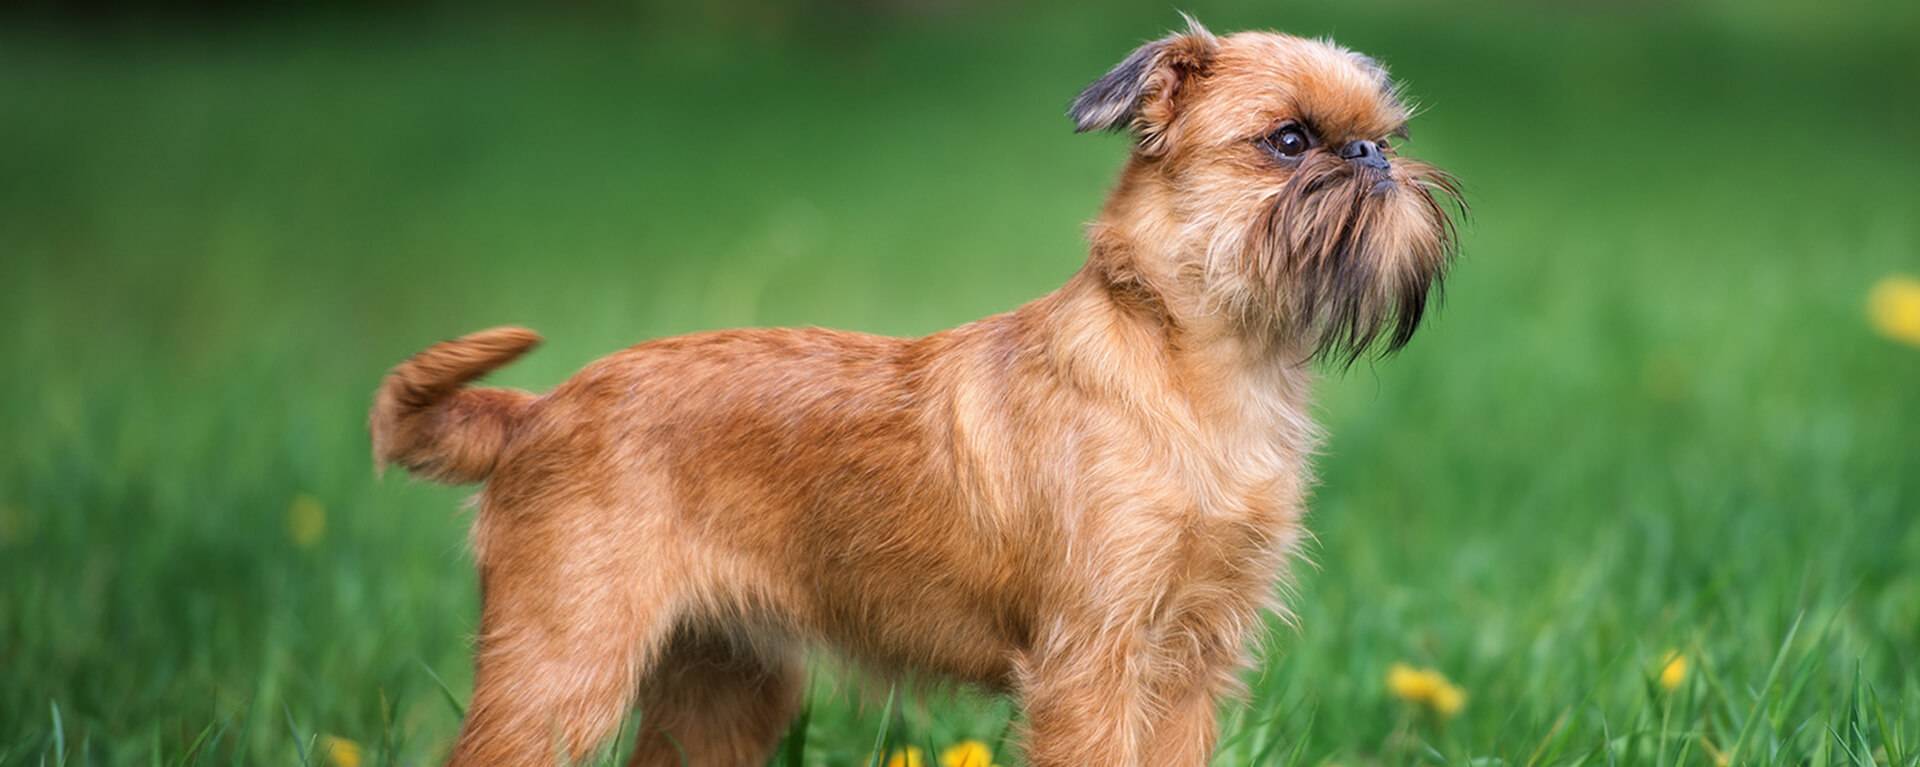 Собака грифон фото британский